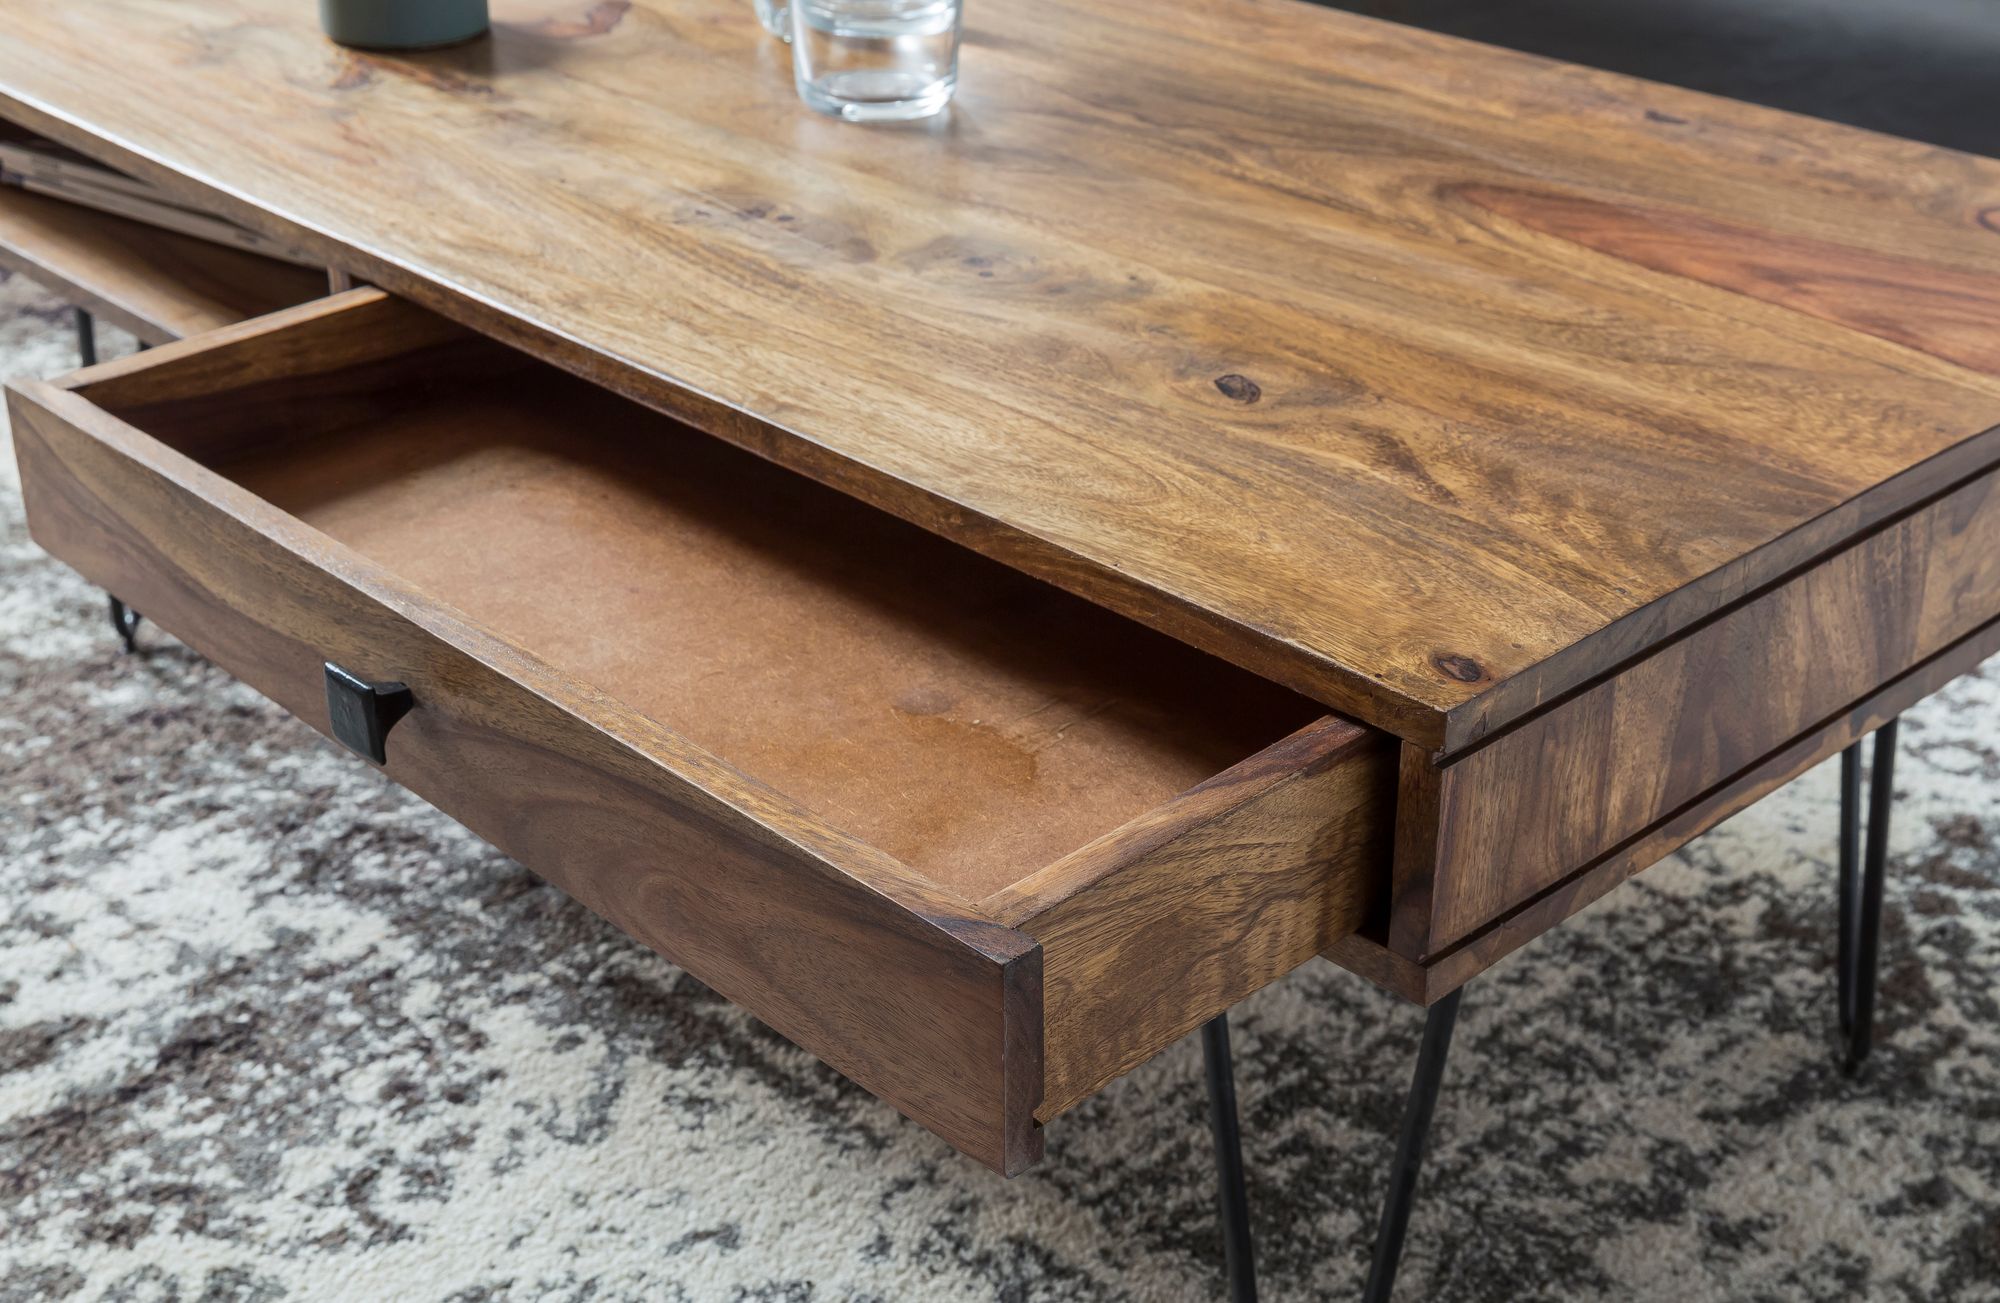 WOHNLING Couchtisch Massiv-Holz Sheesham 110cm breit Wohnzimmer-Tisch Design Metallbeine Landhaus-Stil Beistelltisch